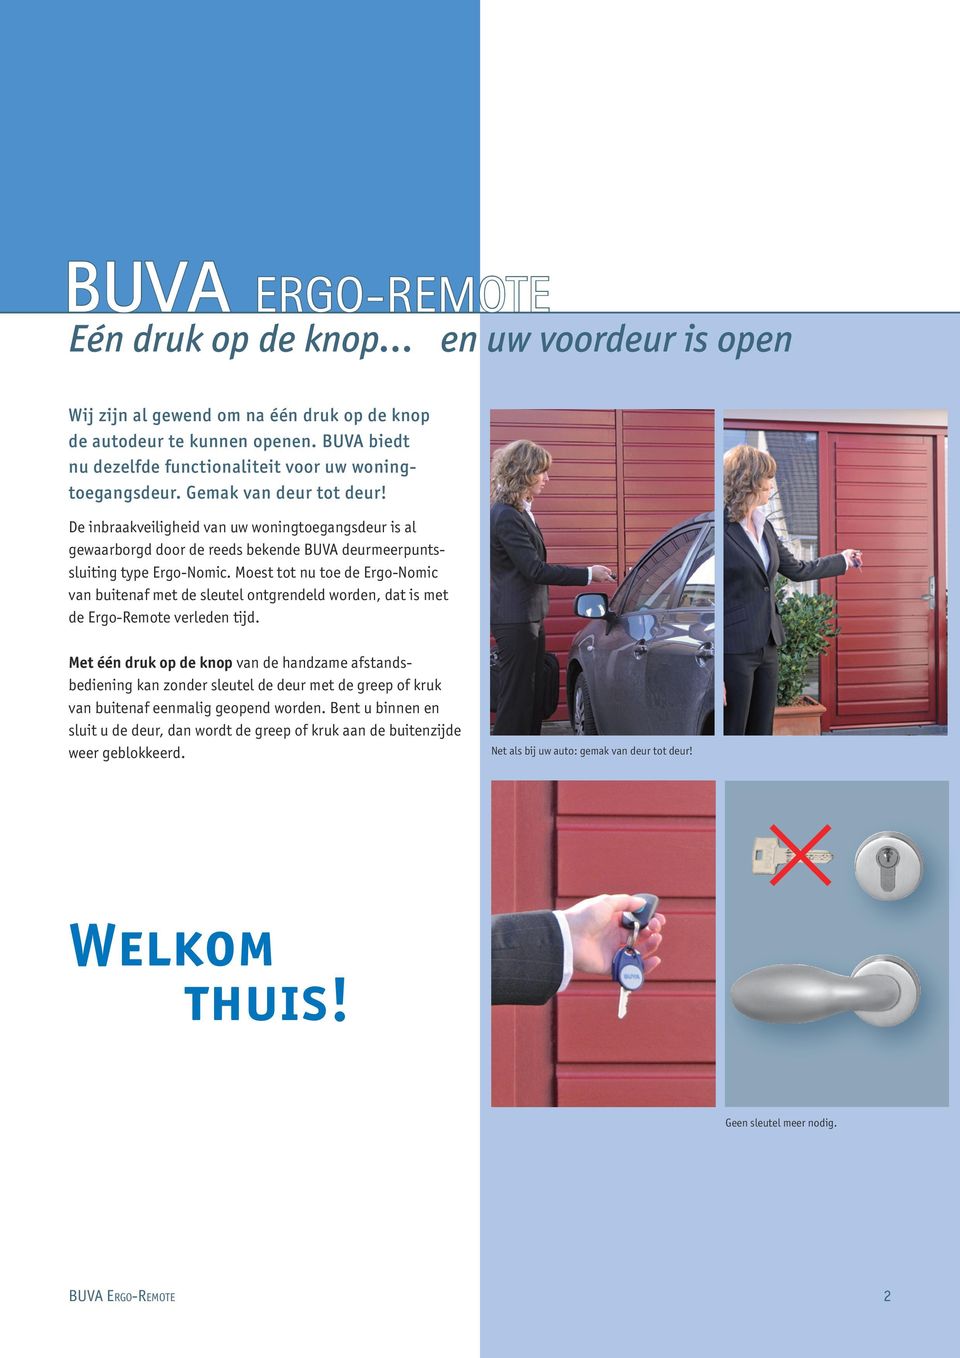 De inbraakveiligheid van uw woningtoegangsdeur is al gewaarborgd door de reeds bekende BUVA deurmeerpuntssluiting type Ergo-Nomic.